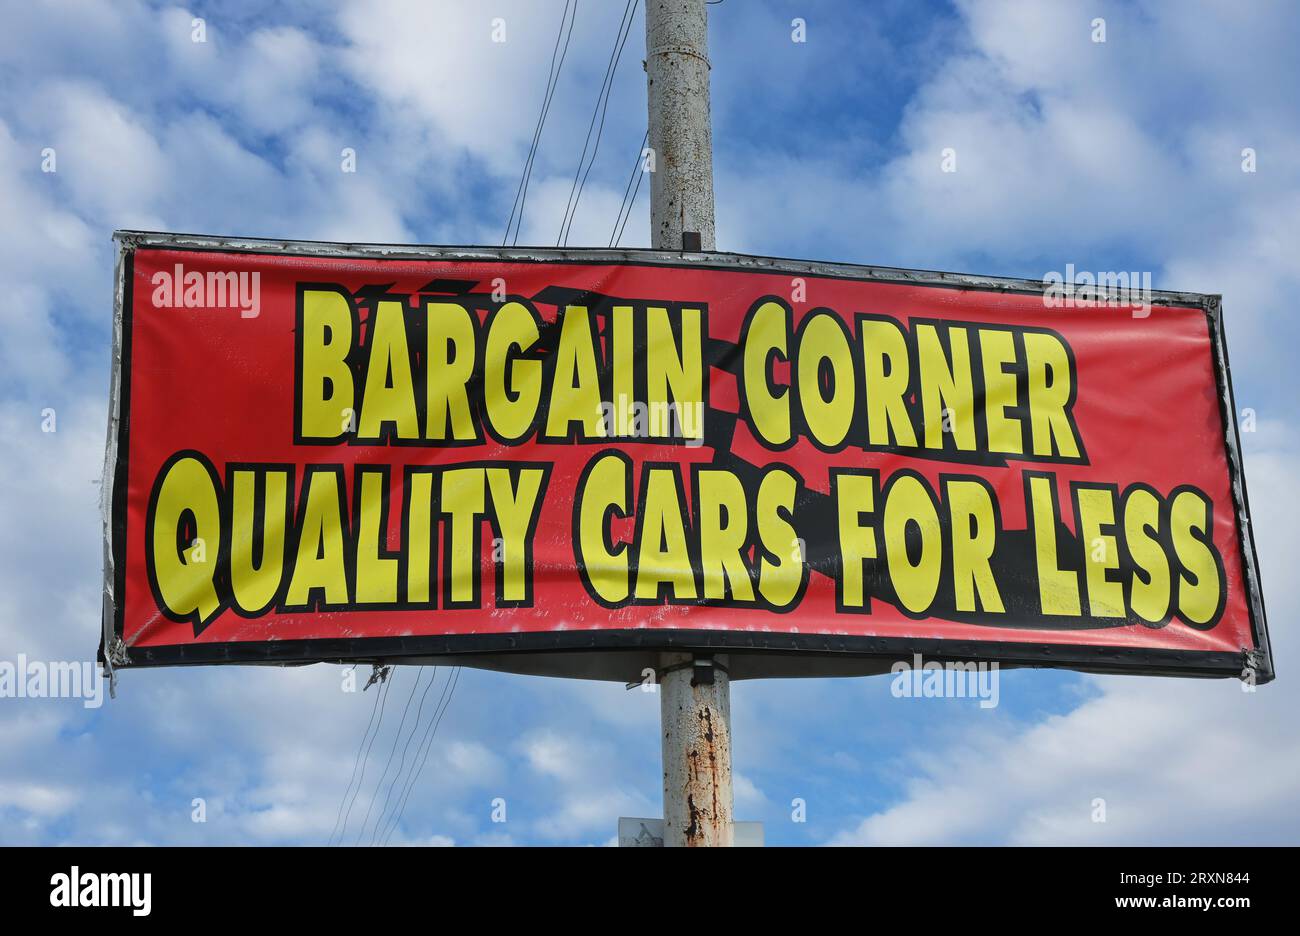 FULLERTON, CALIFORNIA - 19 SEPT 2023: Bargain Corner Quality Cars For Less sign in Downtown Fullerton. Stock Photo